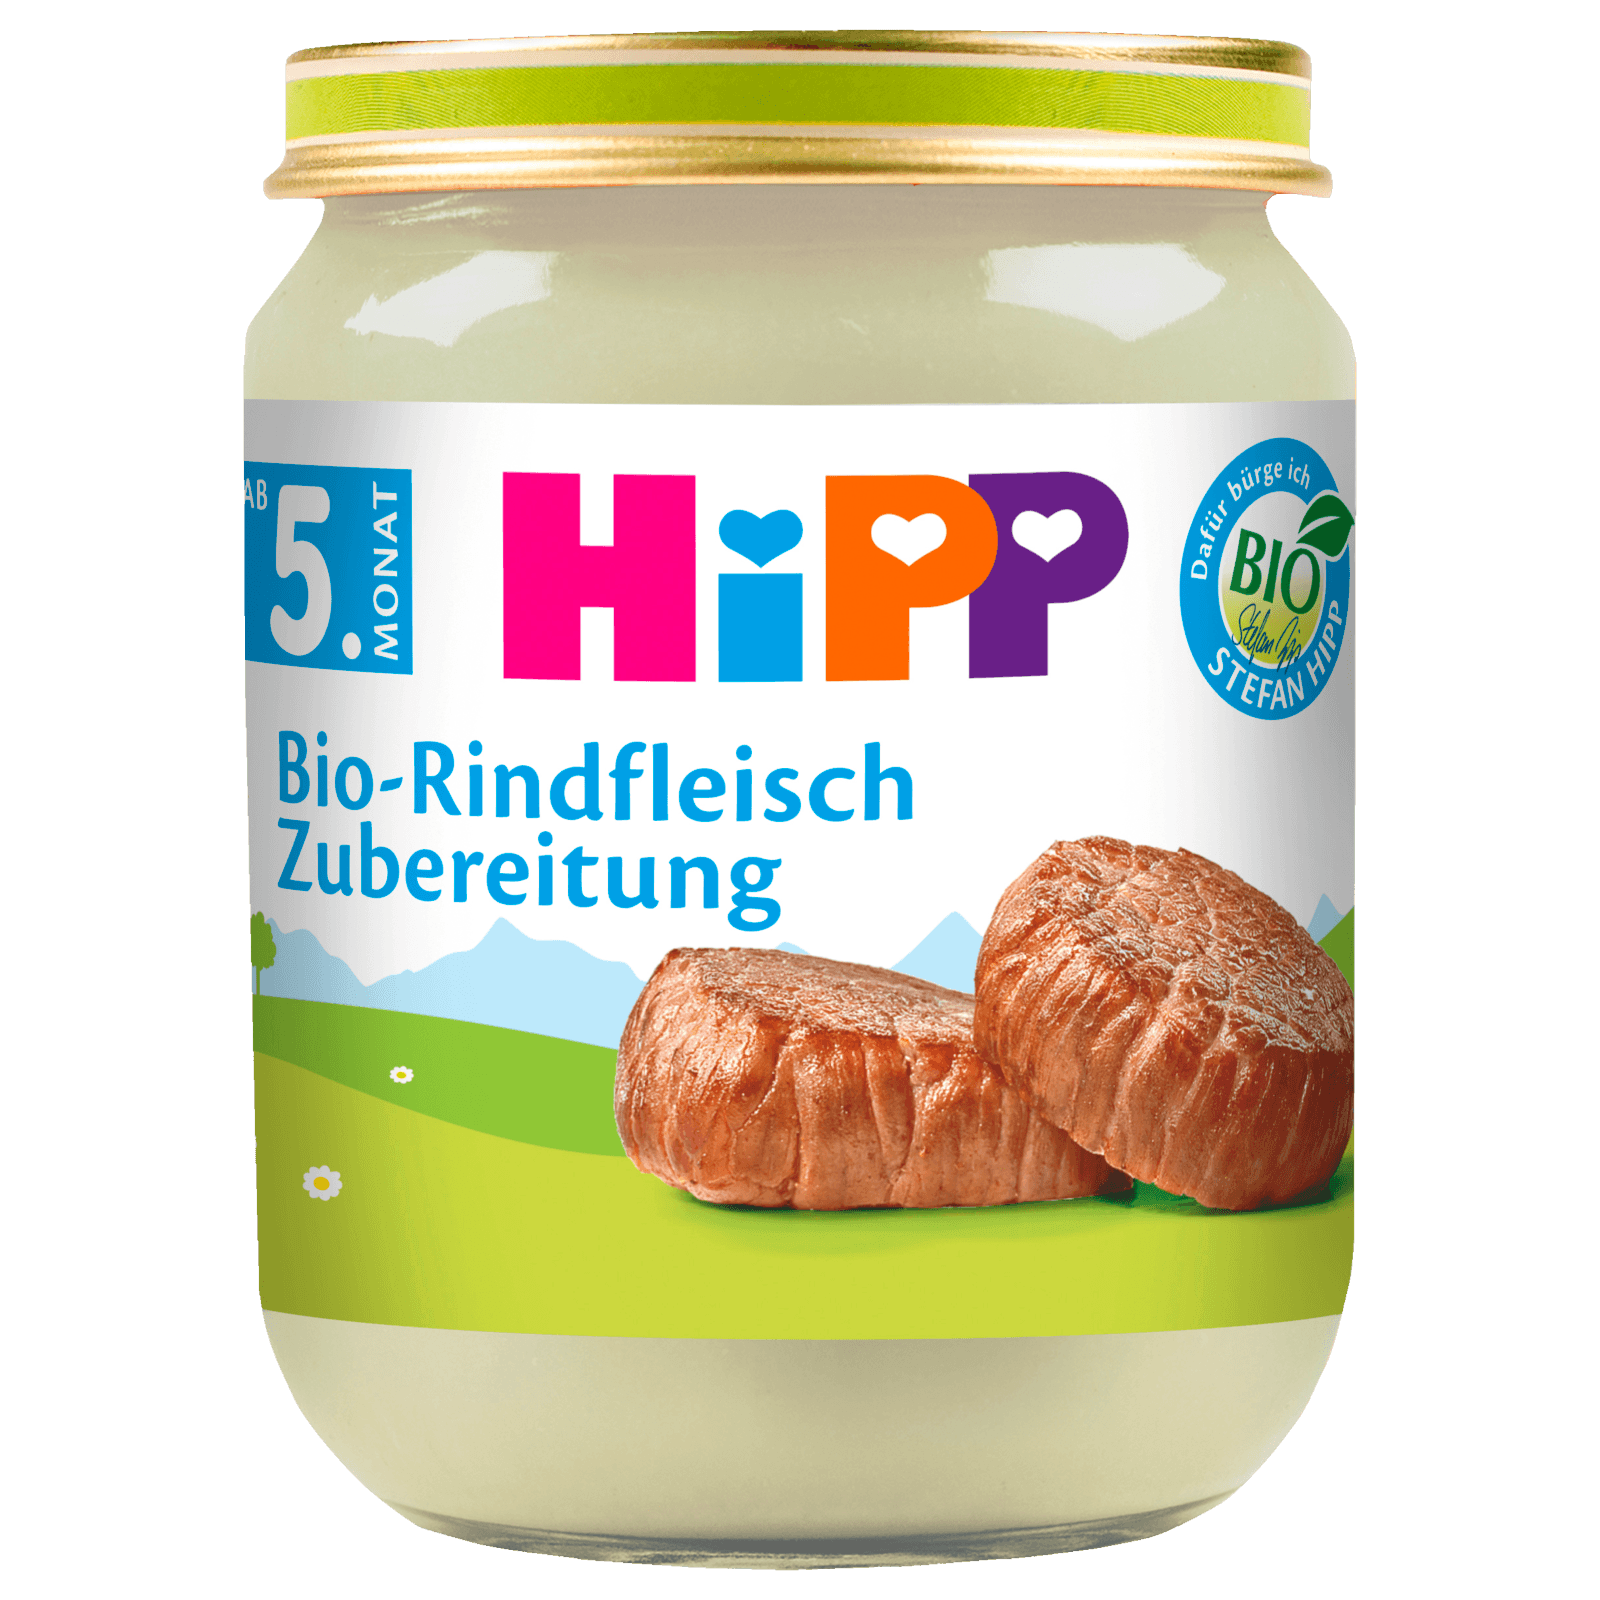 Hipp Bio-Rindfleisch Zubereitung 125g